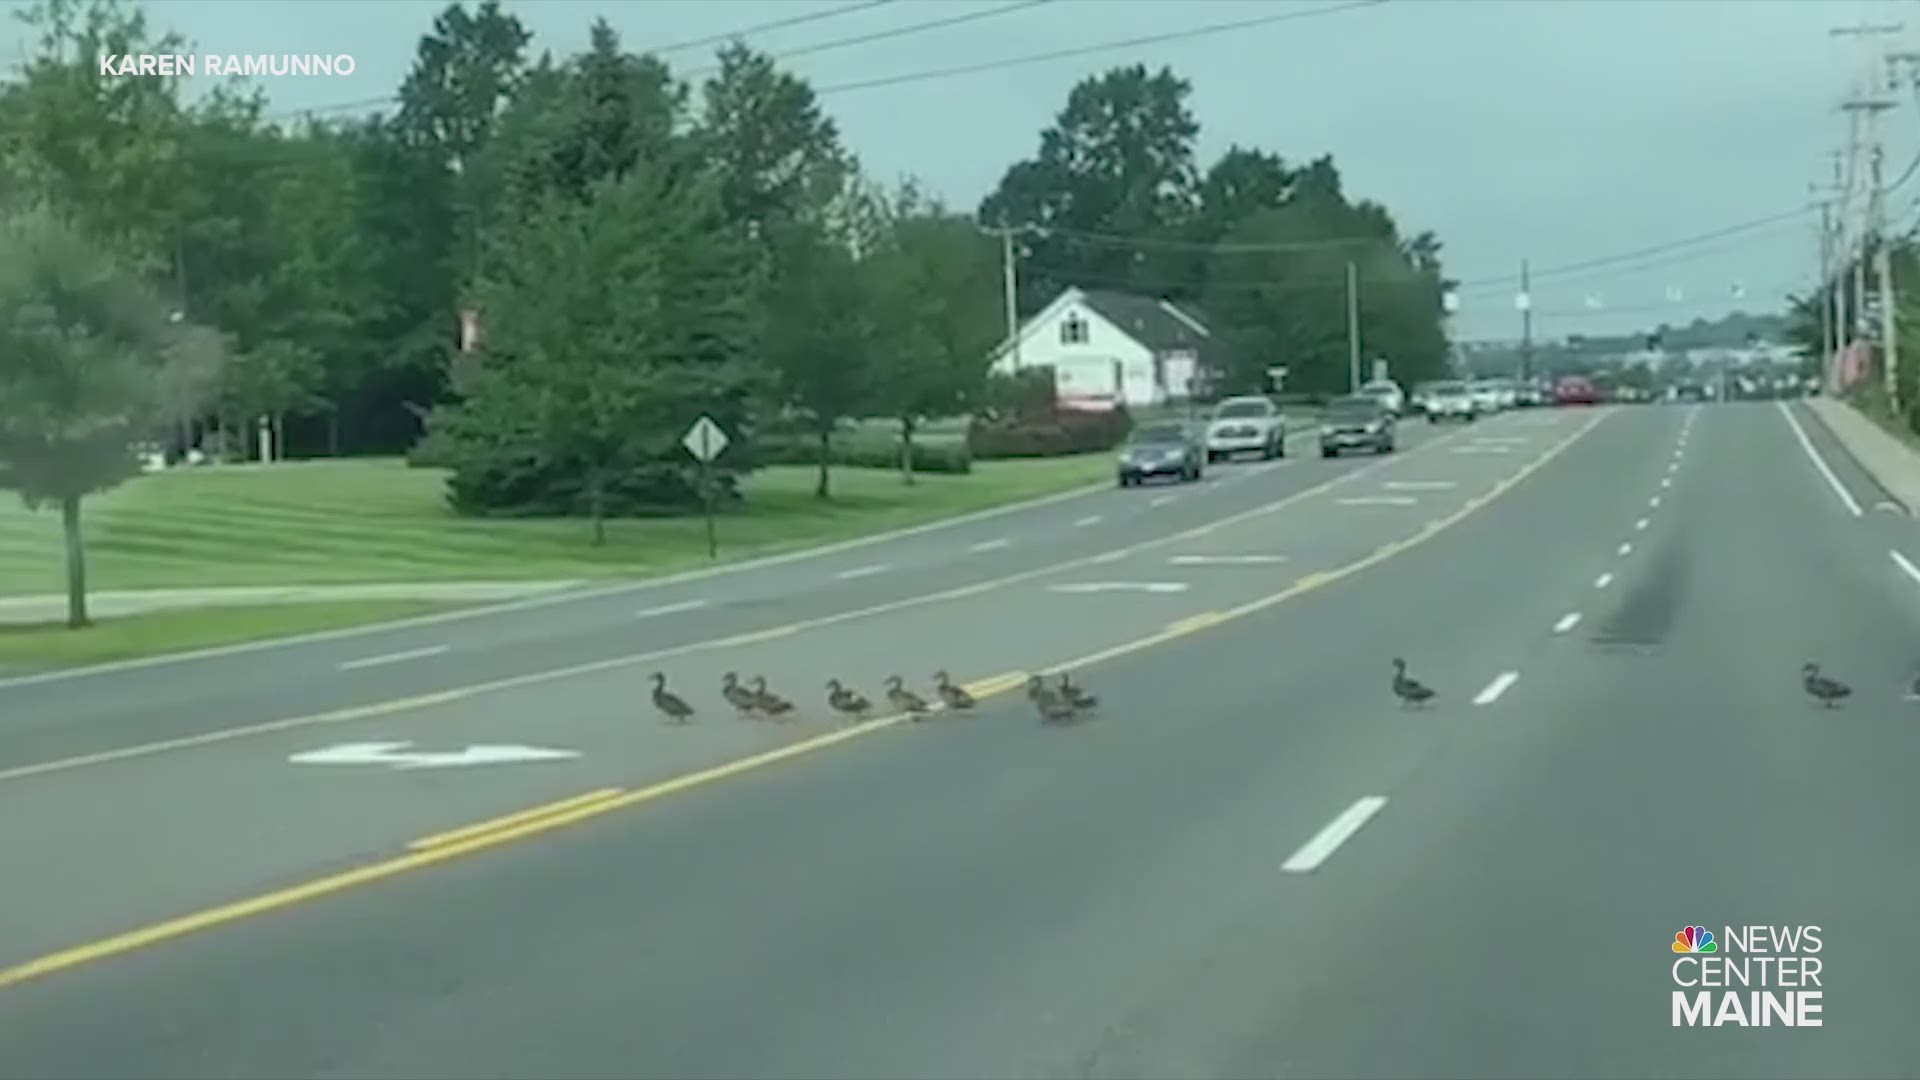 Mom, 45 ducklings safely cross 5-lane road in Biddeford